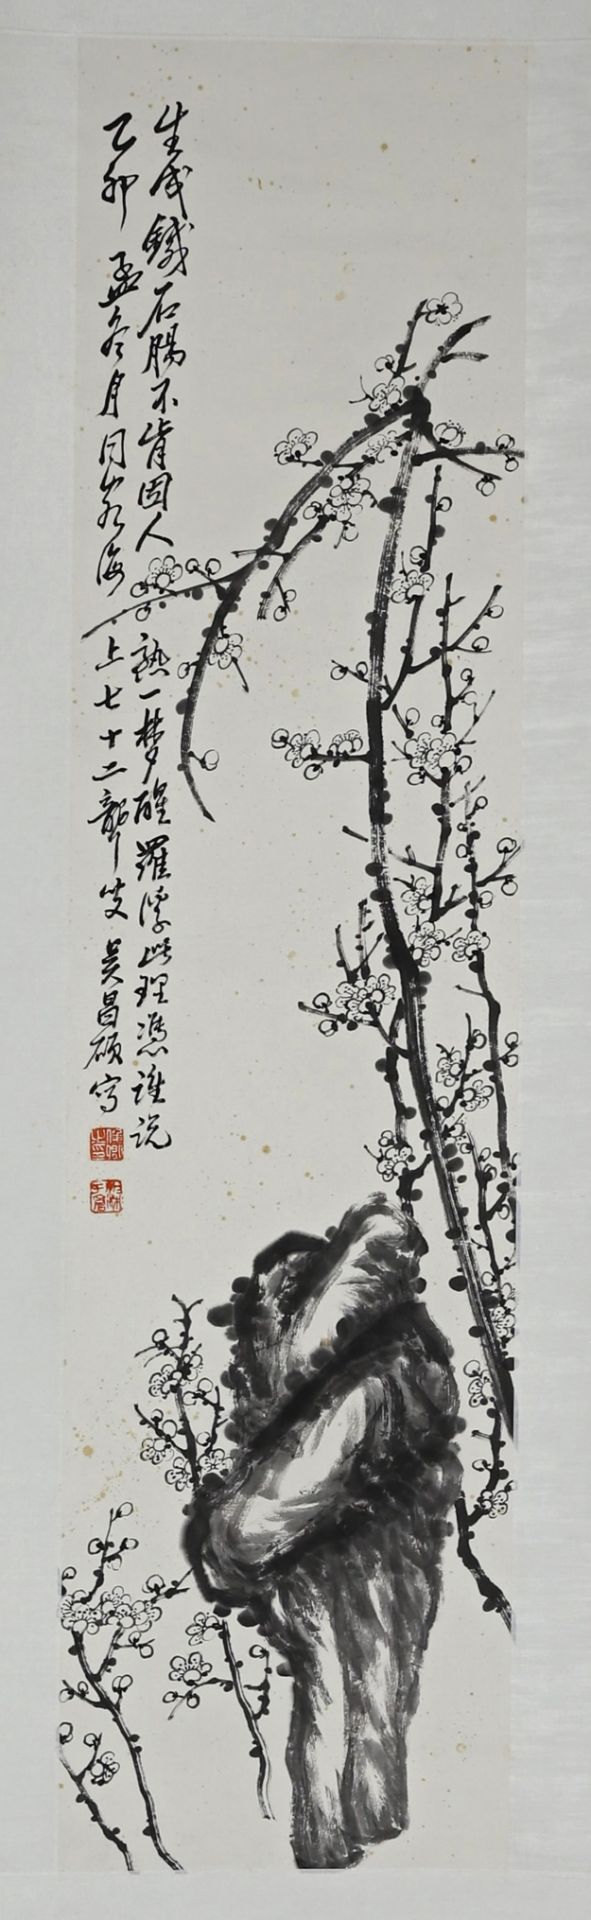 WU CHANG SHUO (1844-1927)